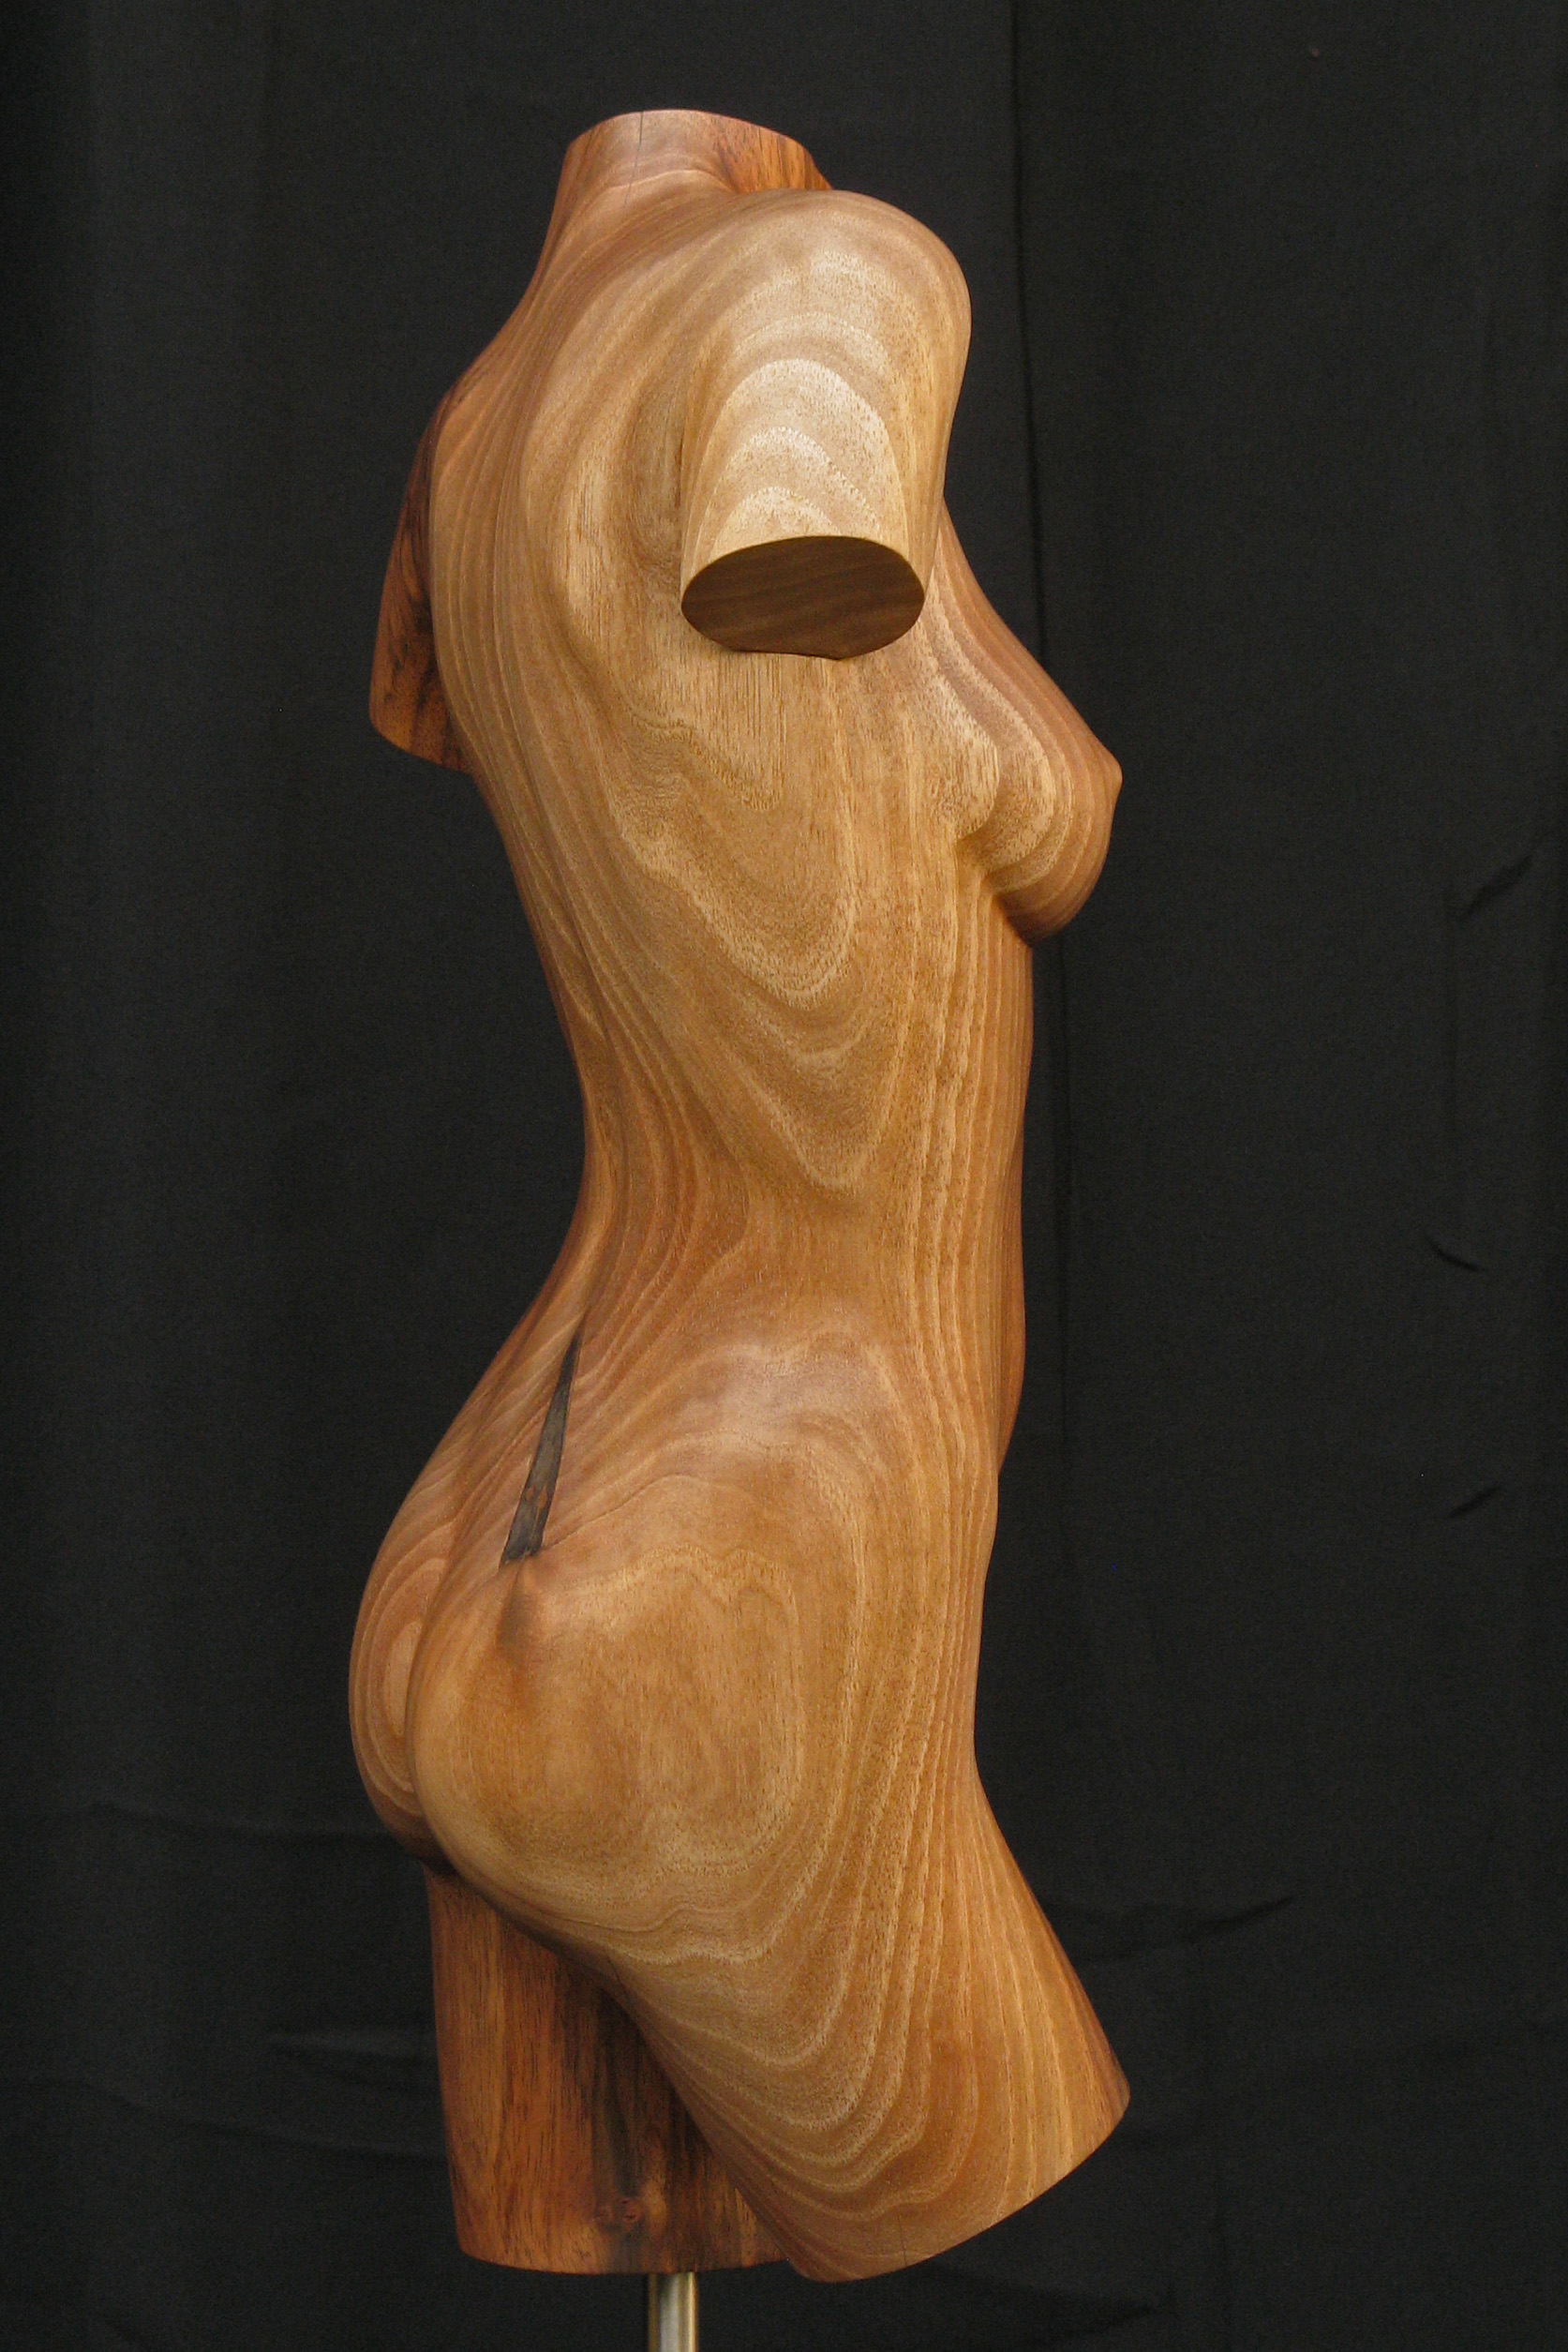 Torso #2, beeld van hout, vrouwelijke torso, rechterzijde